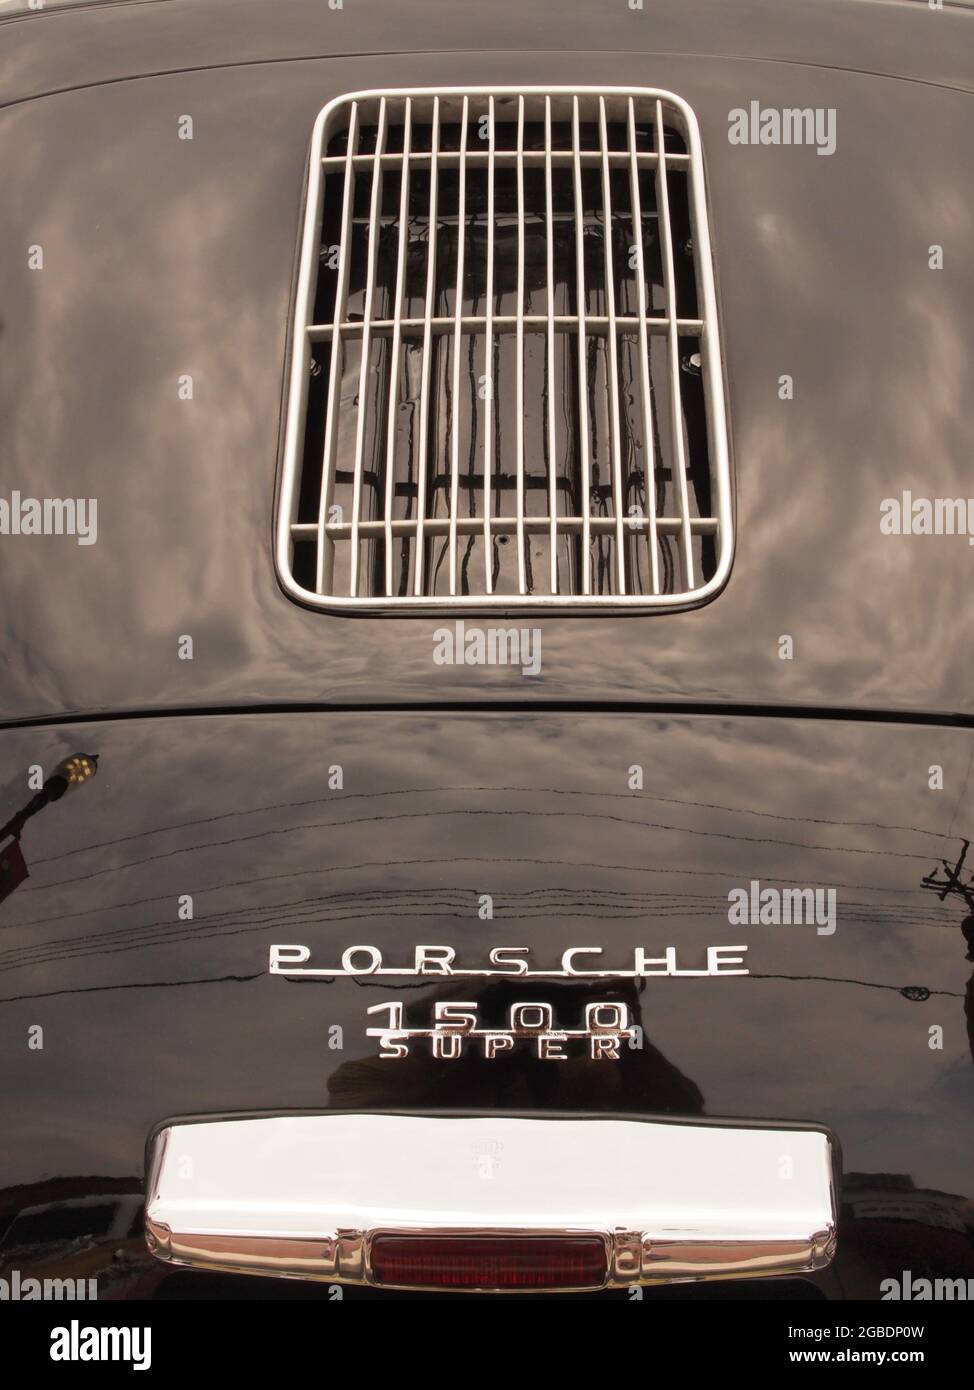 Details zu Oldtimer, die kürzlich auf einer New Jersey Car Show gesehen wurden. Details sind Haubenornamente, Grills und Innenräume von einzigartigen alten Autos auf dem Display. Historisches Auto Stockfoto